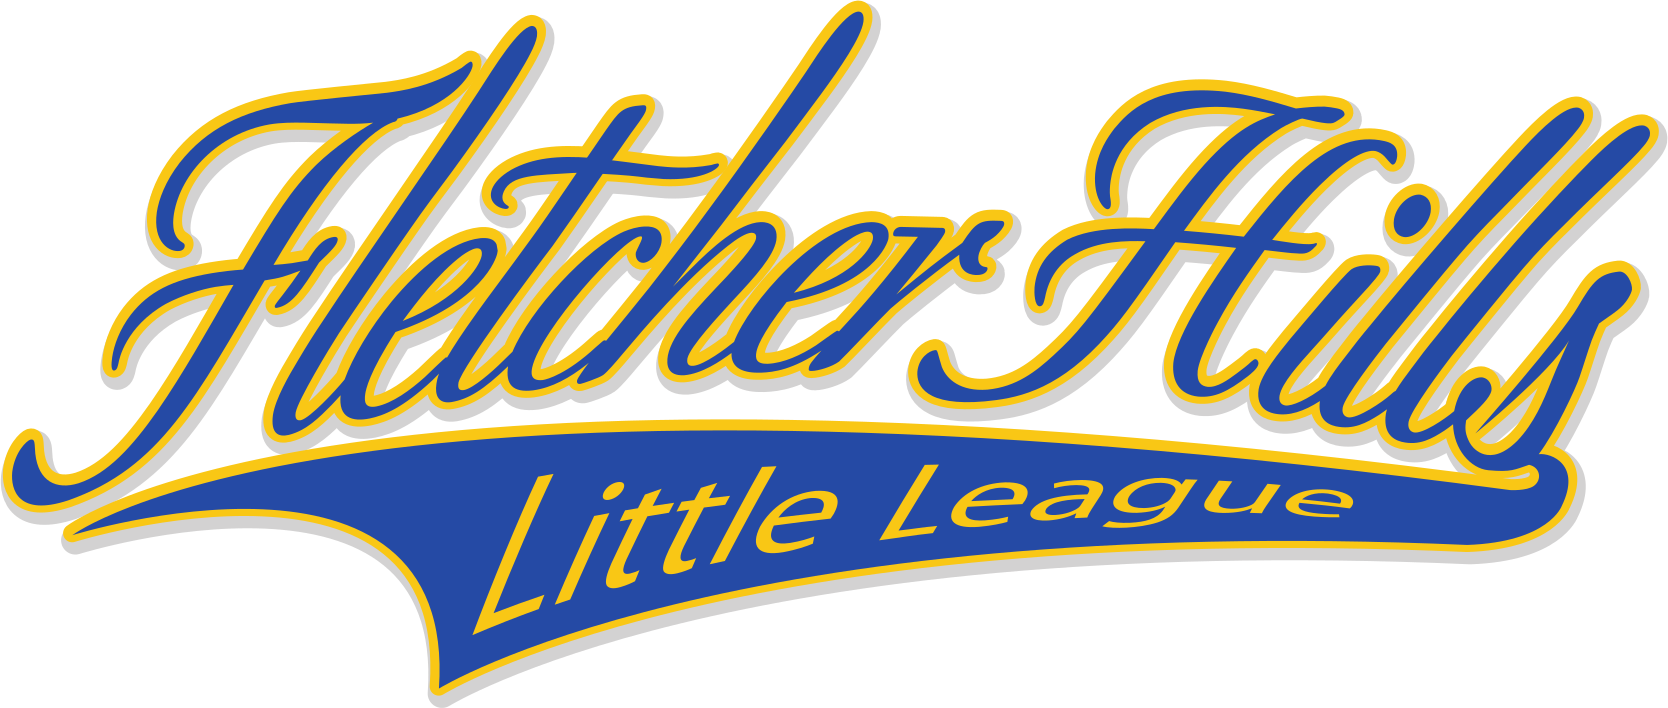 Fletcher Hills Little League